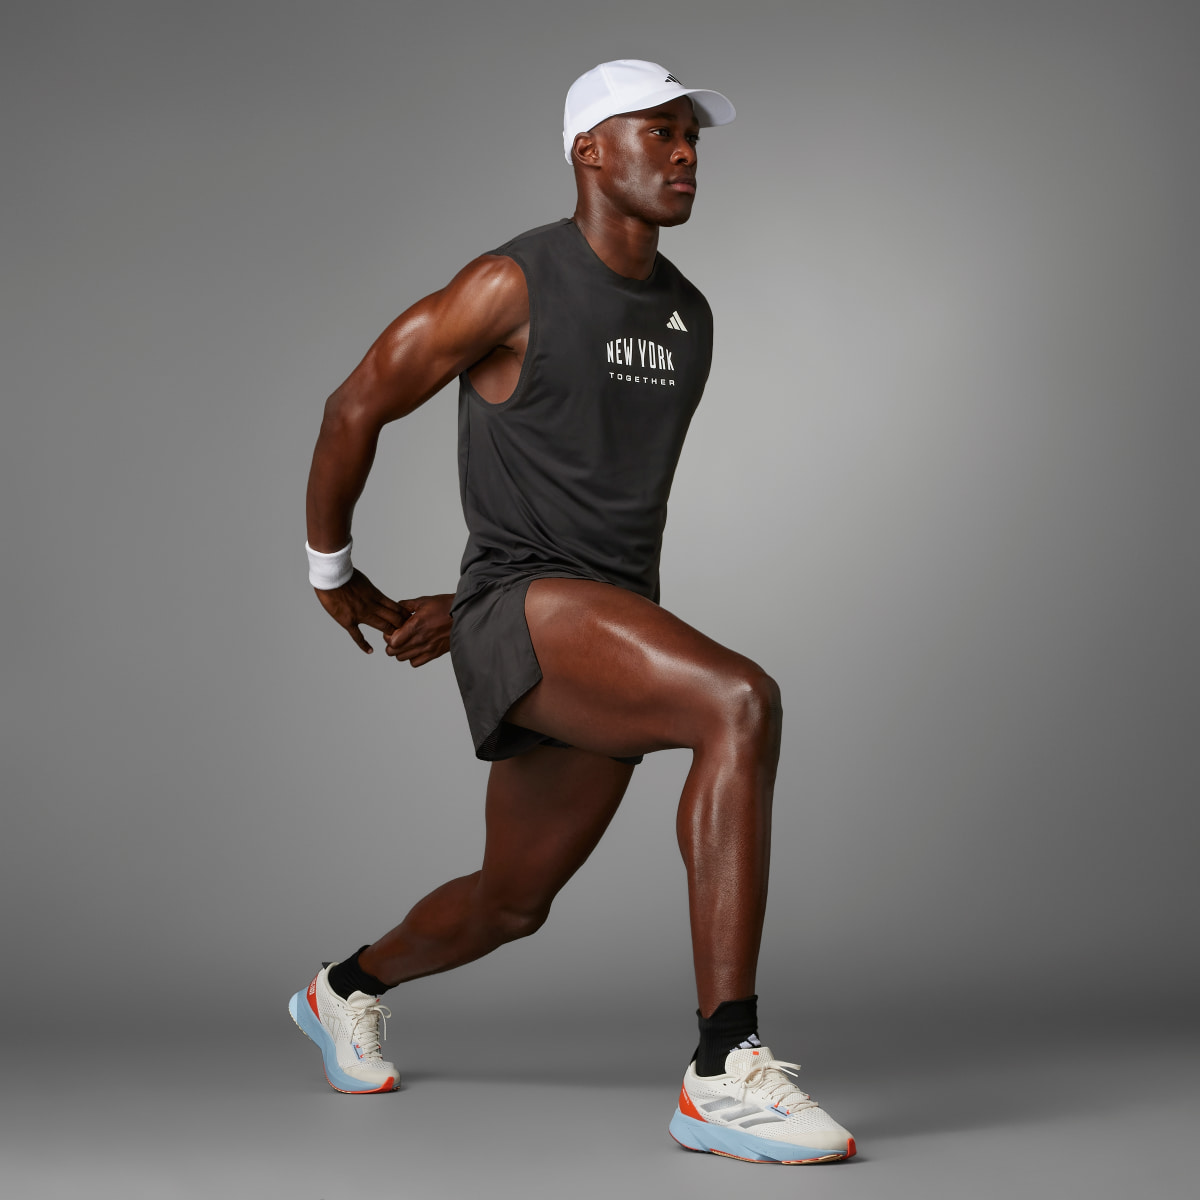 Adidas NYC Running Singlet (Gender Neutral). 7